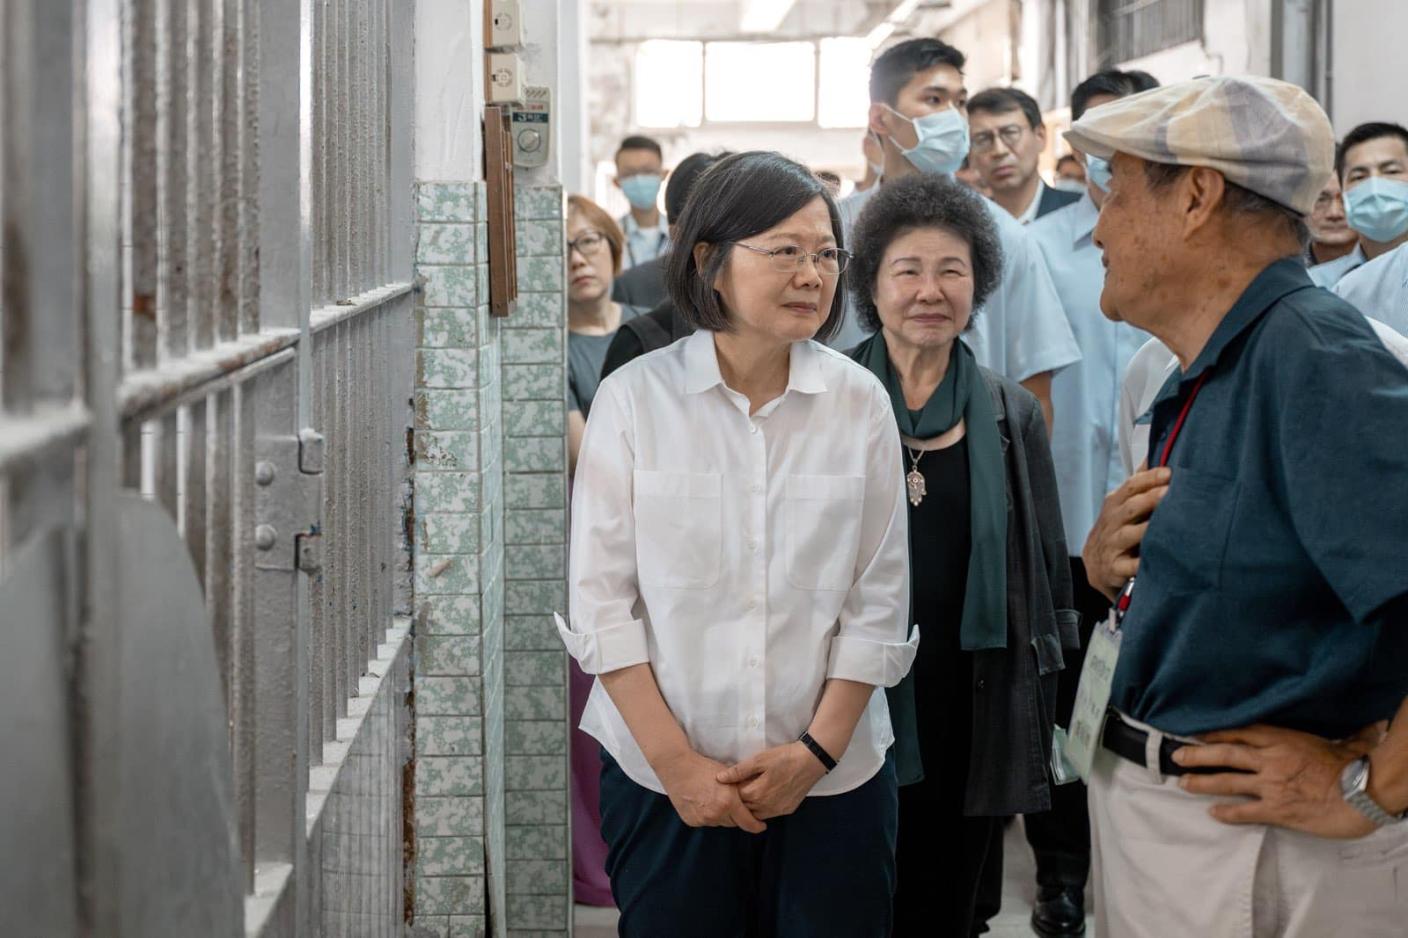 蔡英文總統參訪「原國防部台灣軍人監獄—前促轉會審定之不義遺址」。翻攝蔡英文臉書